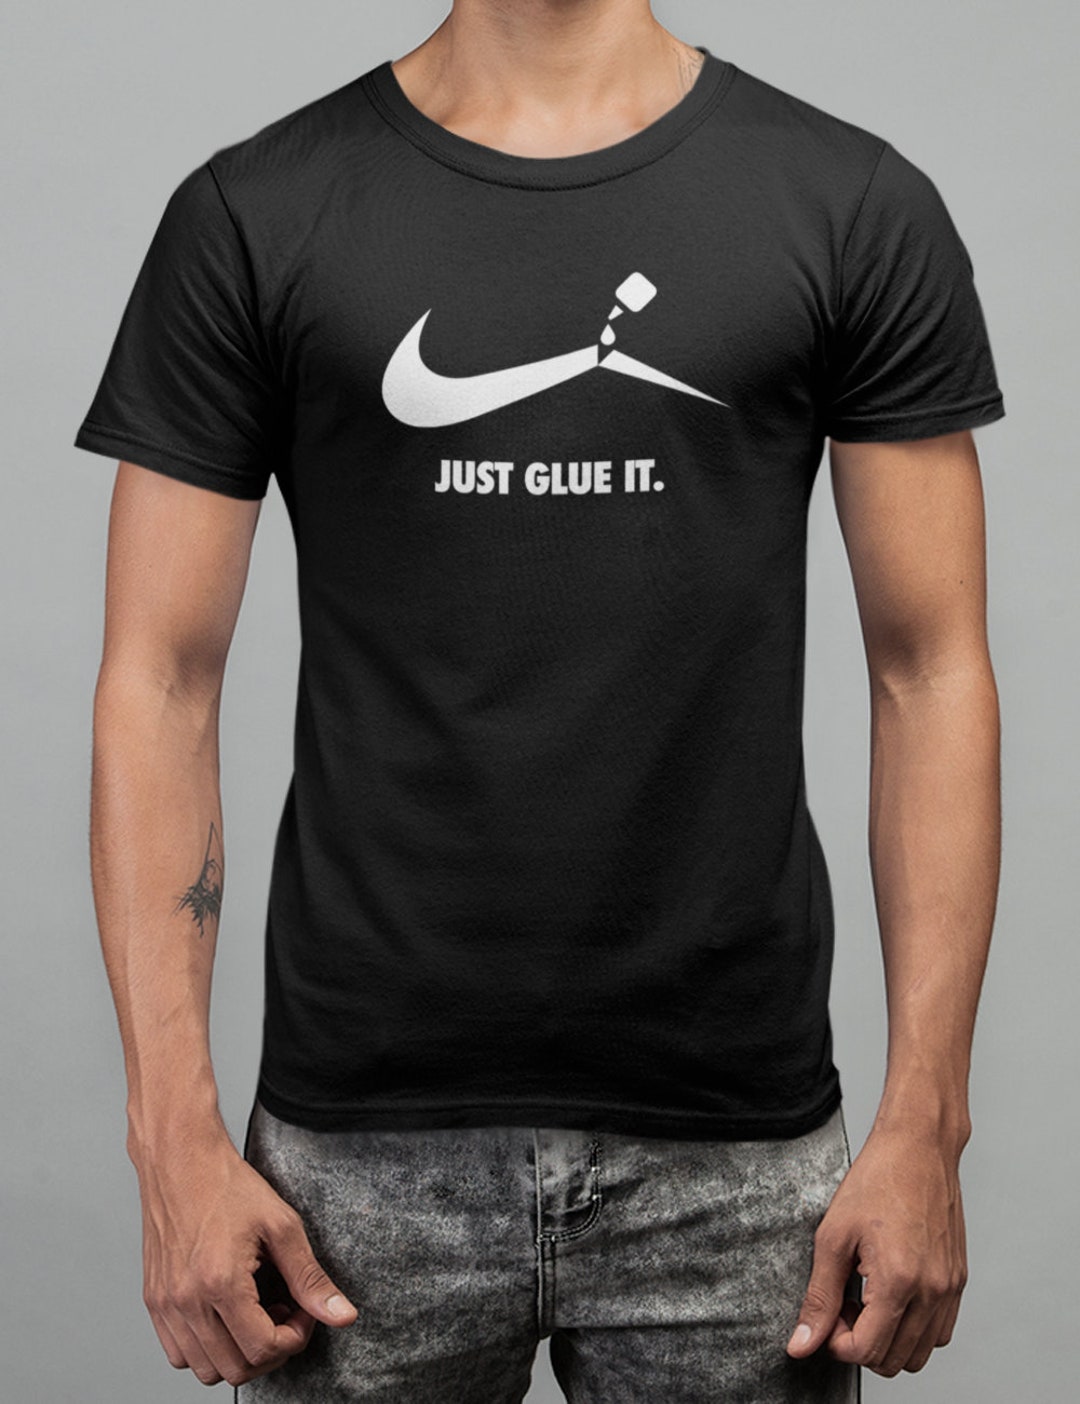 Nike Logo Parody T Shirt Funny Nike Tshirt Just Glue It Shirt Gift for ...